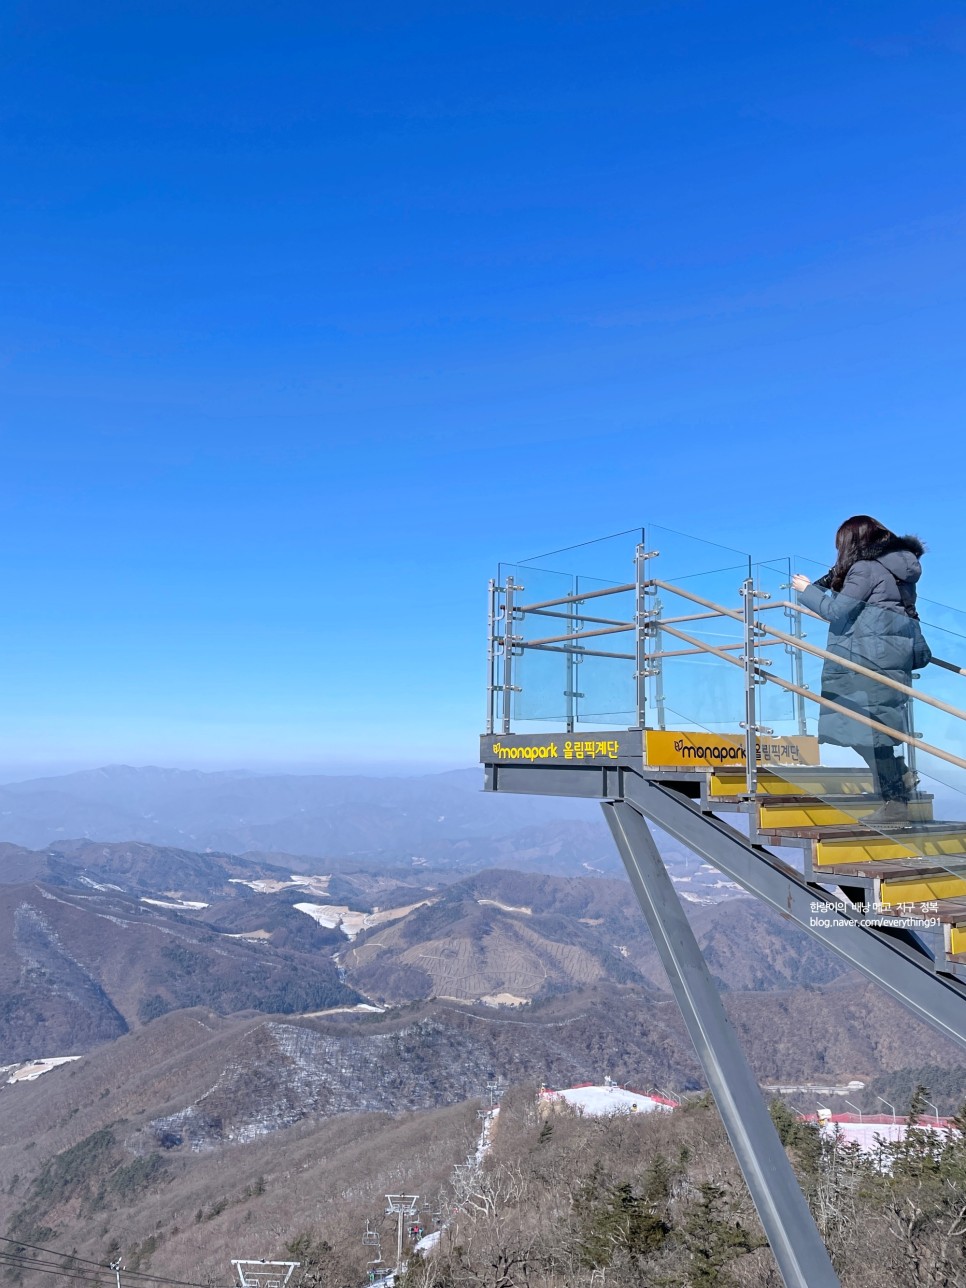 평창 여행 발왕산 케이블카 할인 스카이워크 걷기!